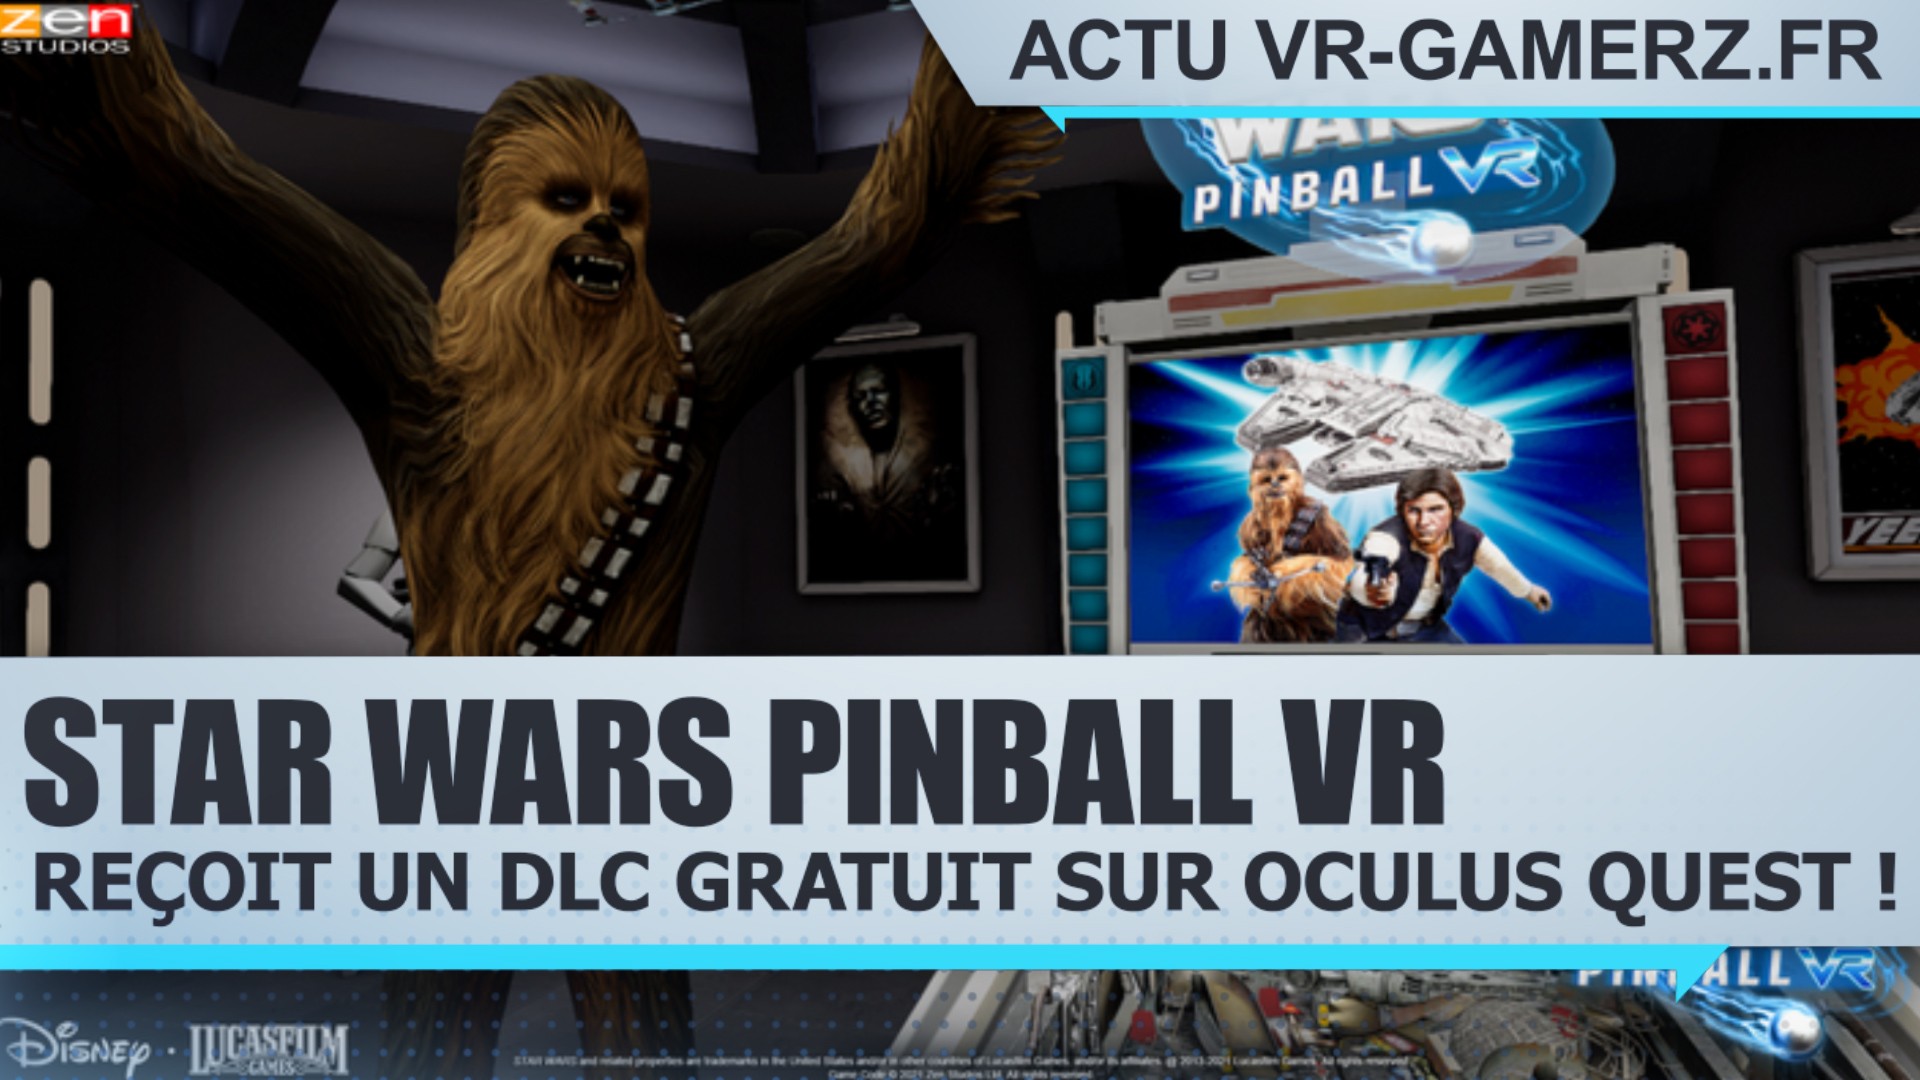 Star Wars Pinball VR reçoit un DLC gratuit sur Oculus quest !